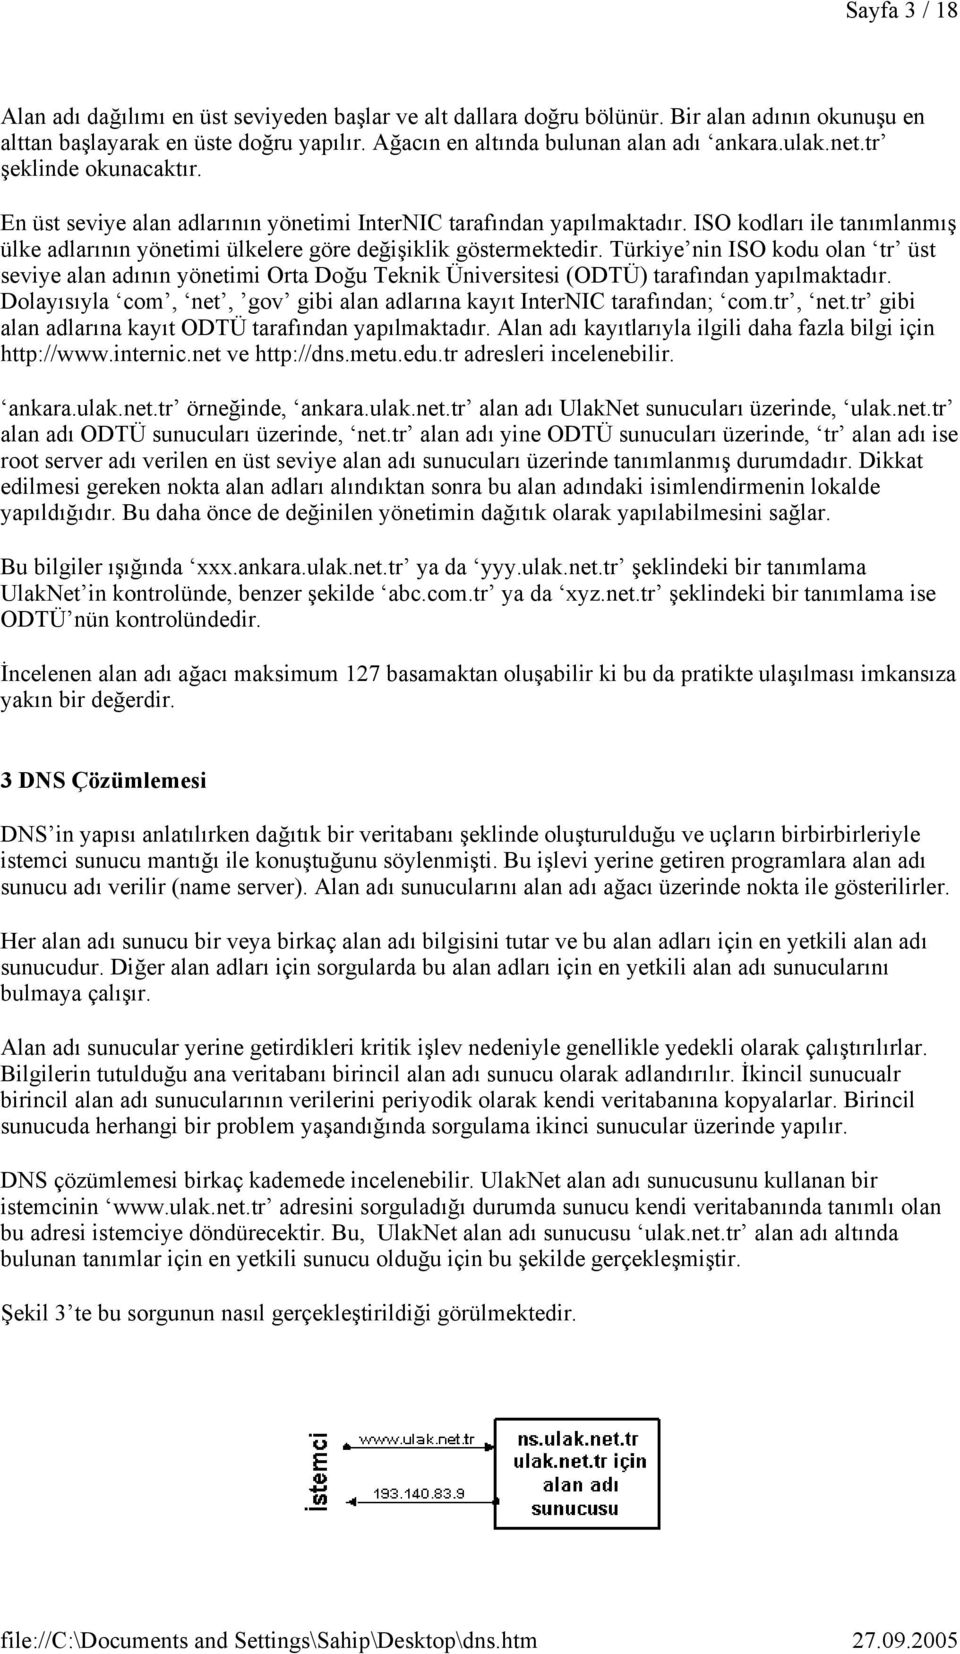 Türkiye nin ISO kodu olan tr üst seviye alan adının yönetimi Orta Doğu Teknik Üniversitesi (ODTÜ) tarafından yapılmaktadır. Dolayısıyla com, net, gov gibi alan adlarına kayıt InterNIC tarafından com.